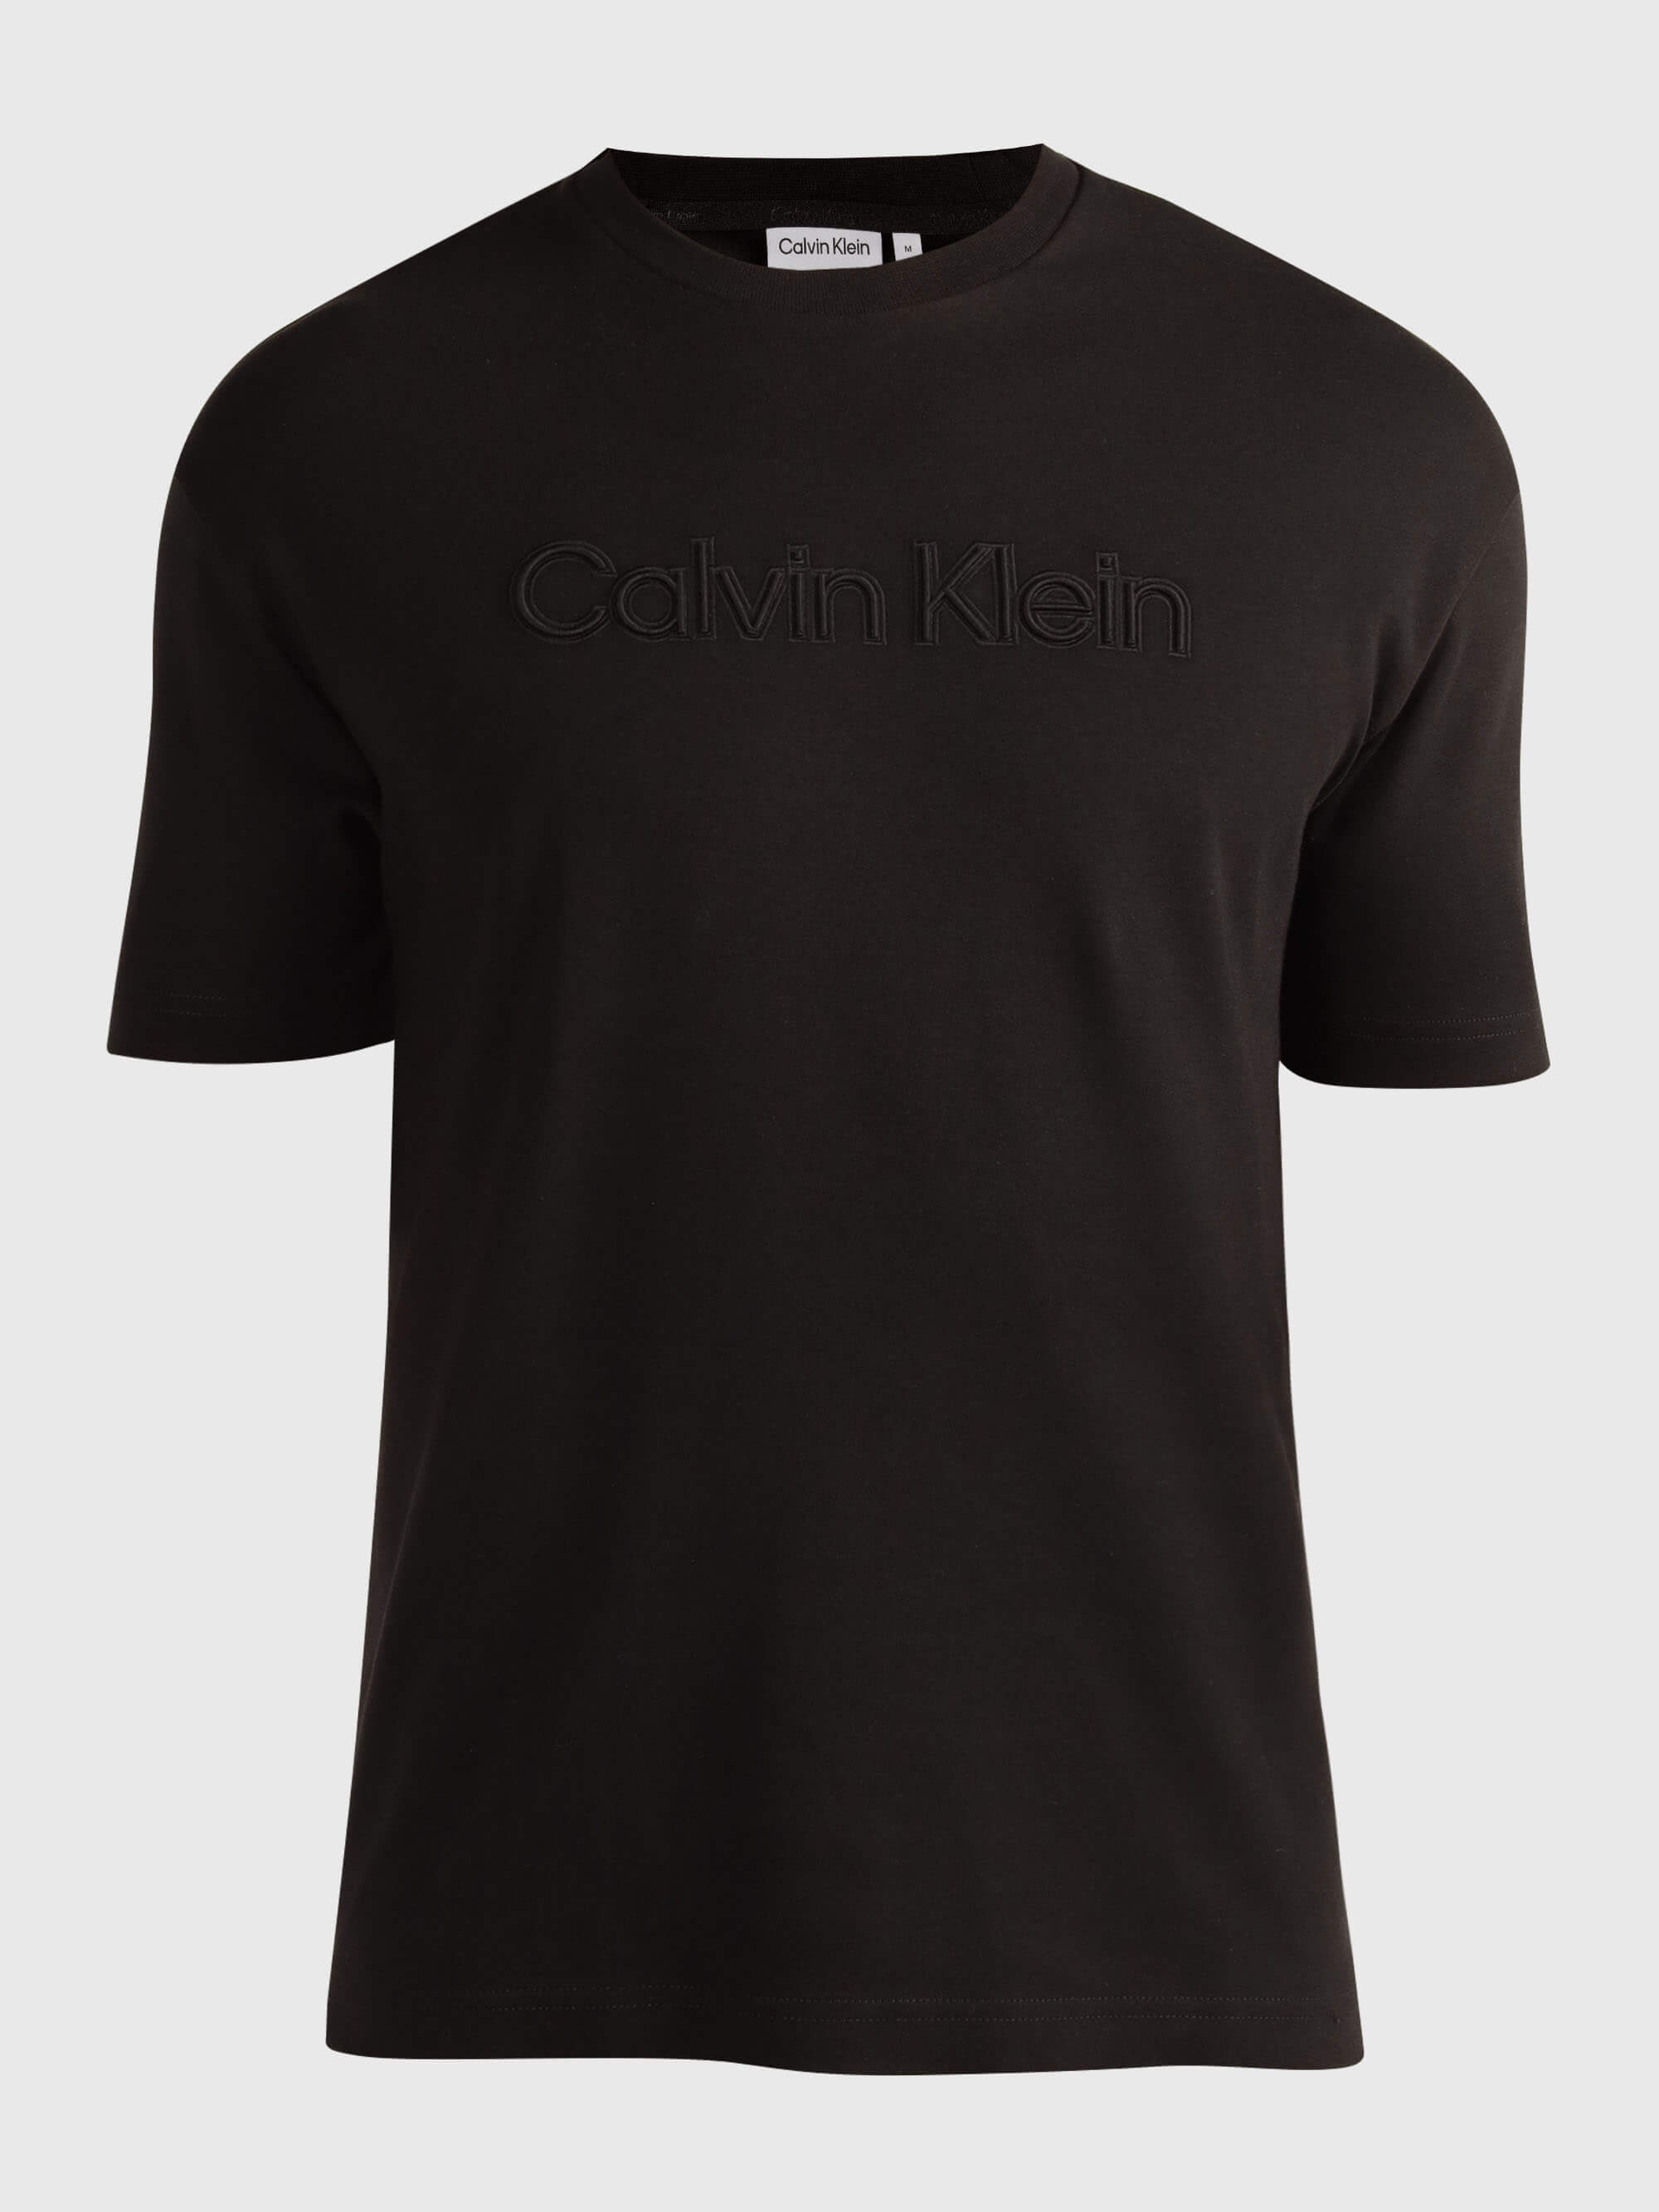 Playera Calvin Klein Logotipo Hombre Negro